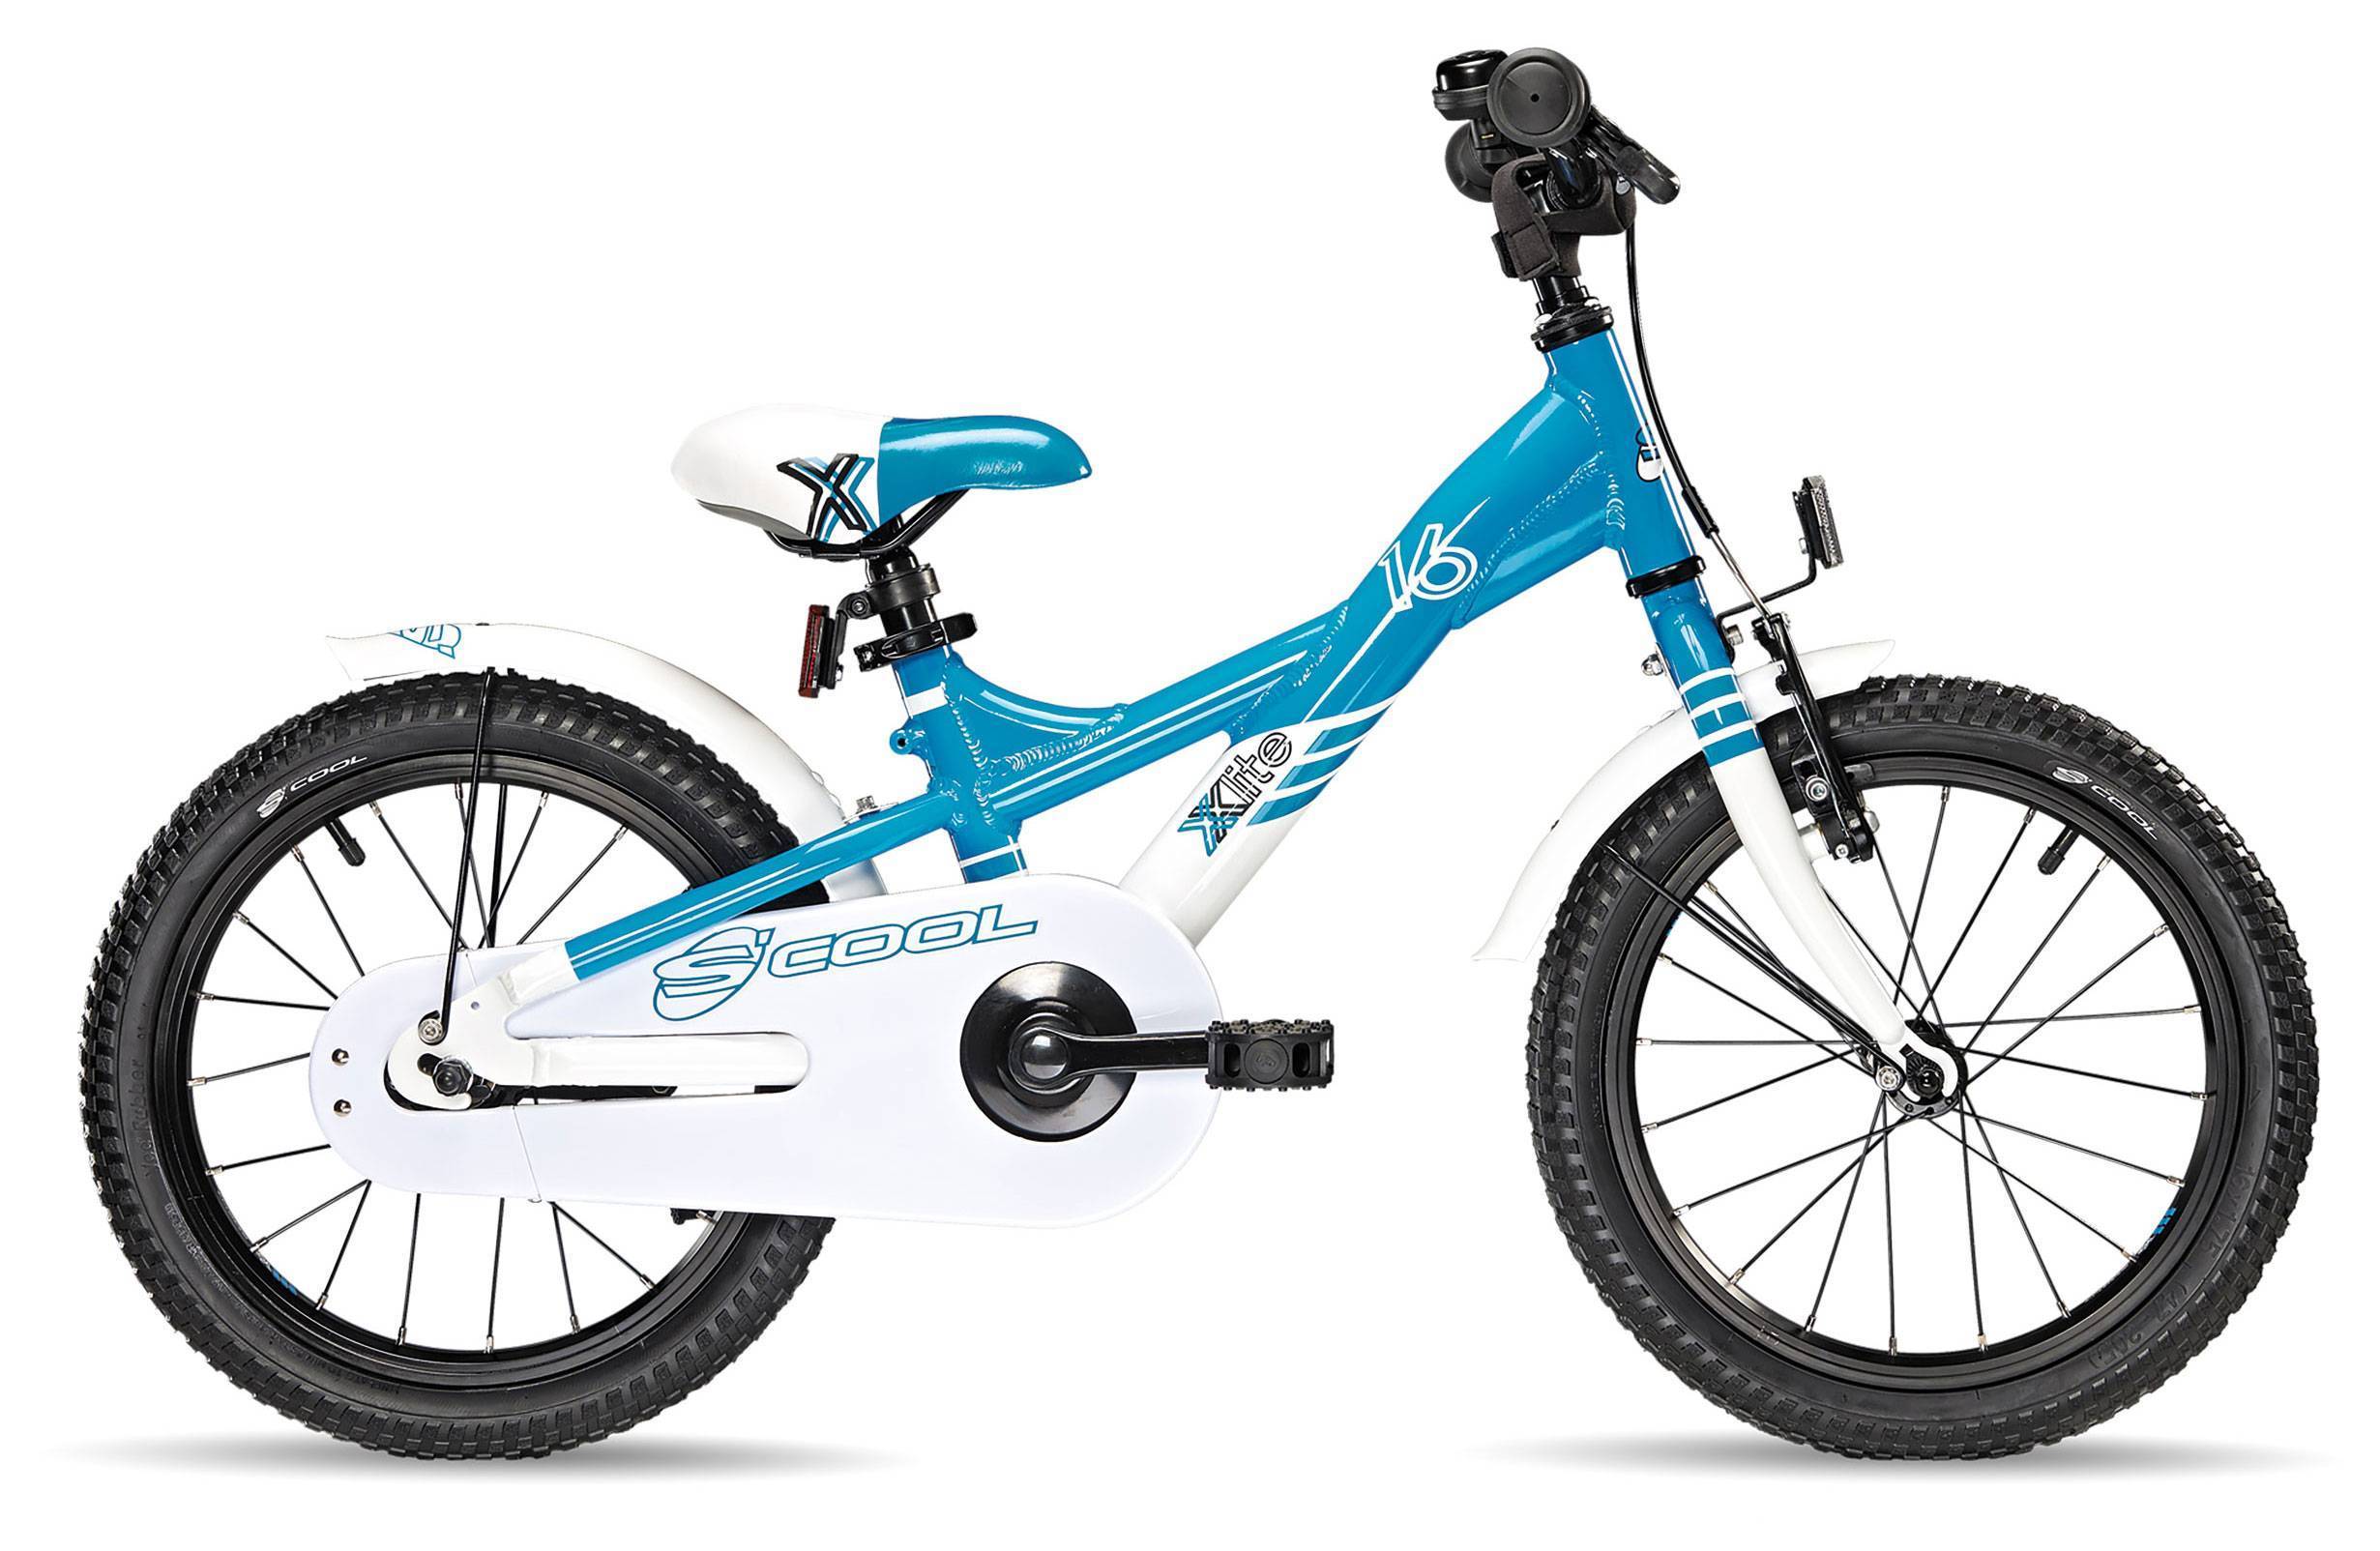 Велосипед детский от 6 лет мальчику. Детский велосипед Scool XXLITE 16. Детский велосипед s'cool XXLITE 16 (2017). Scool XXLITE EVO 16 Alloy. Детский велосипед Scool XXLITE 16 характеристики.